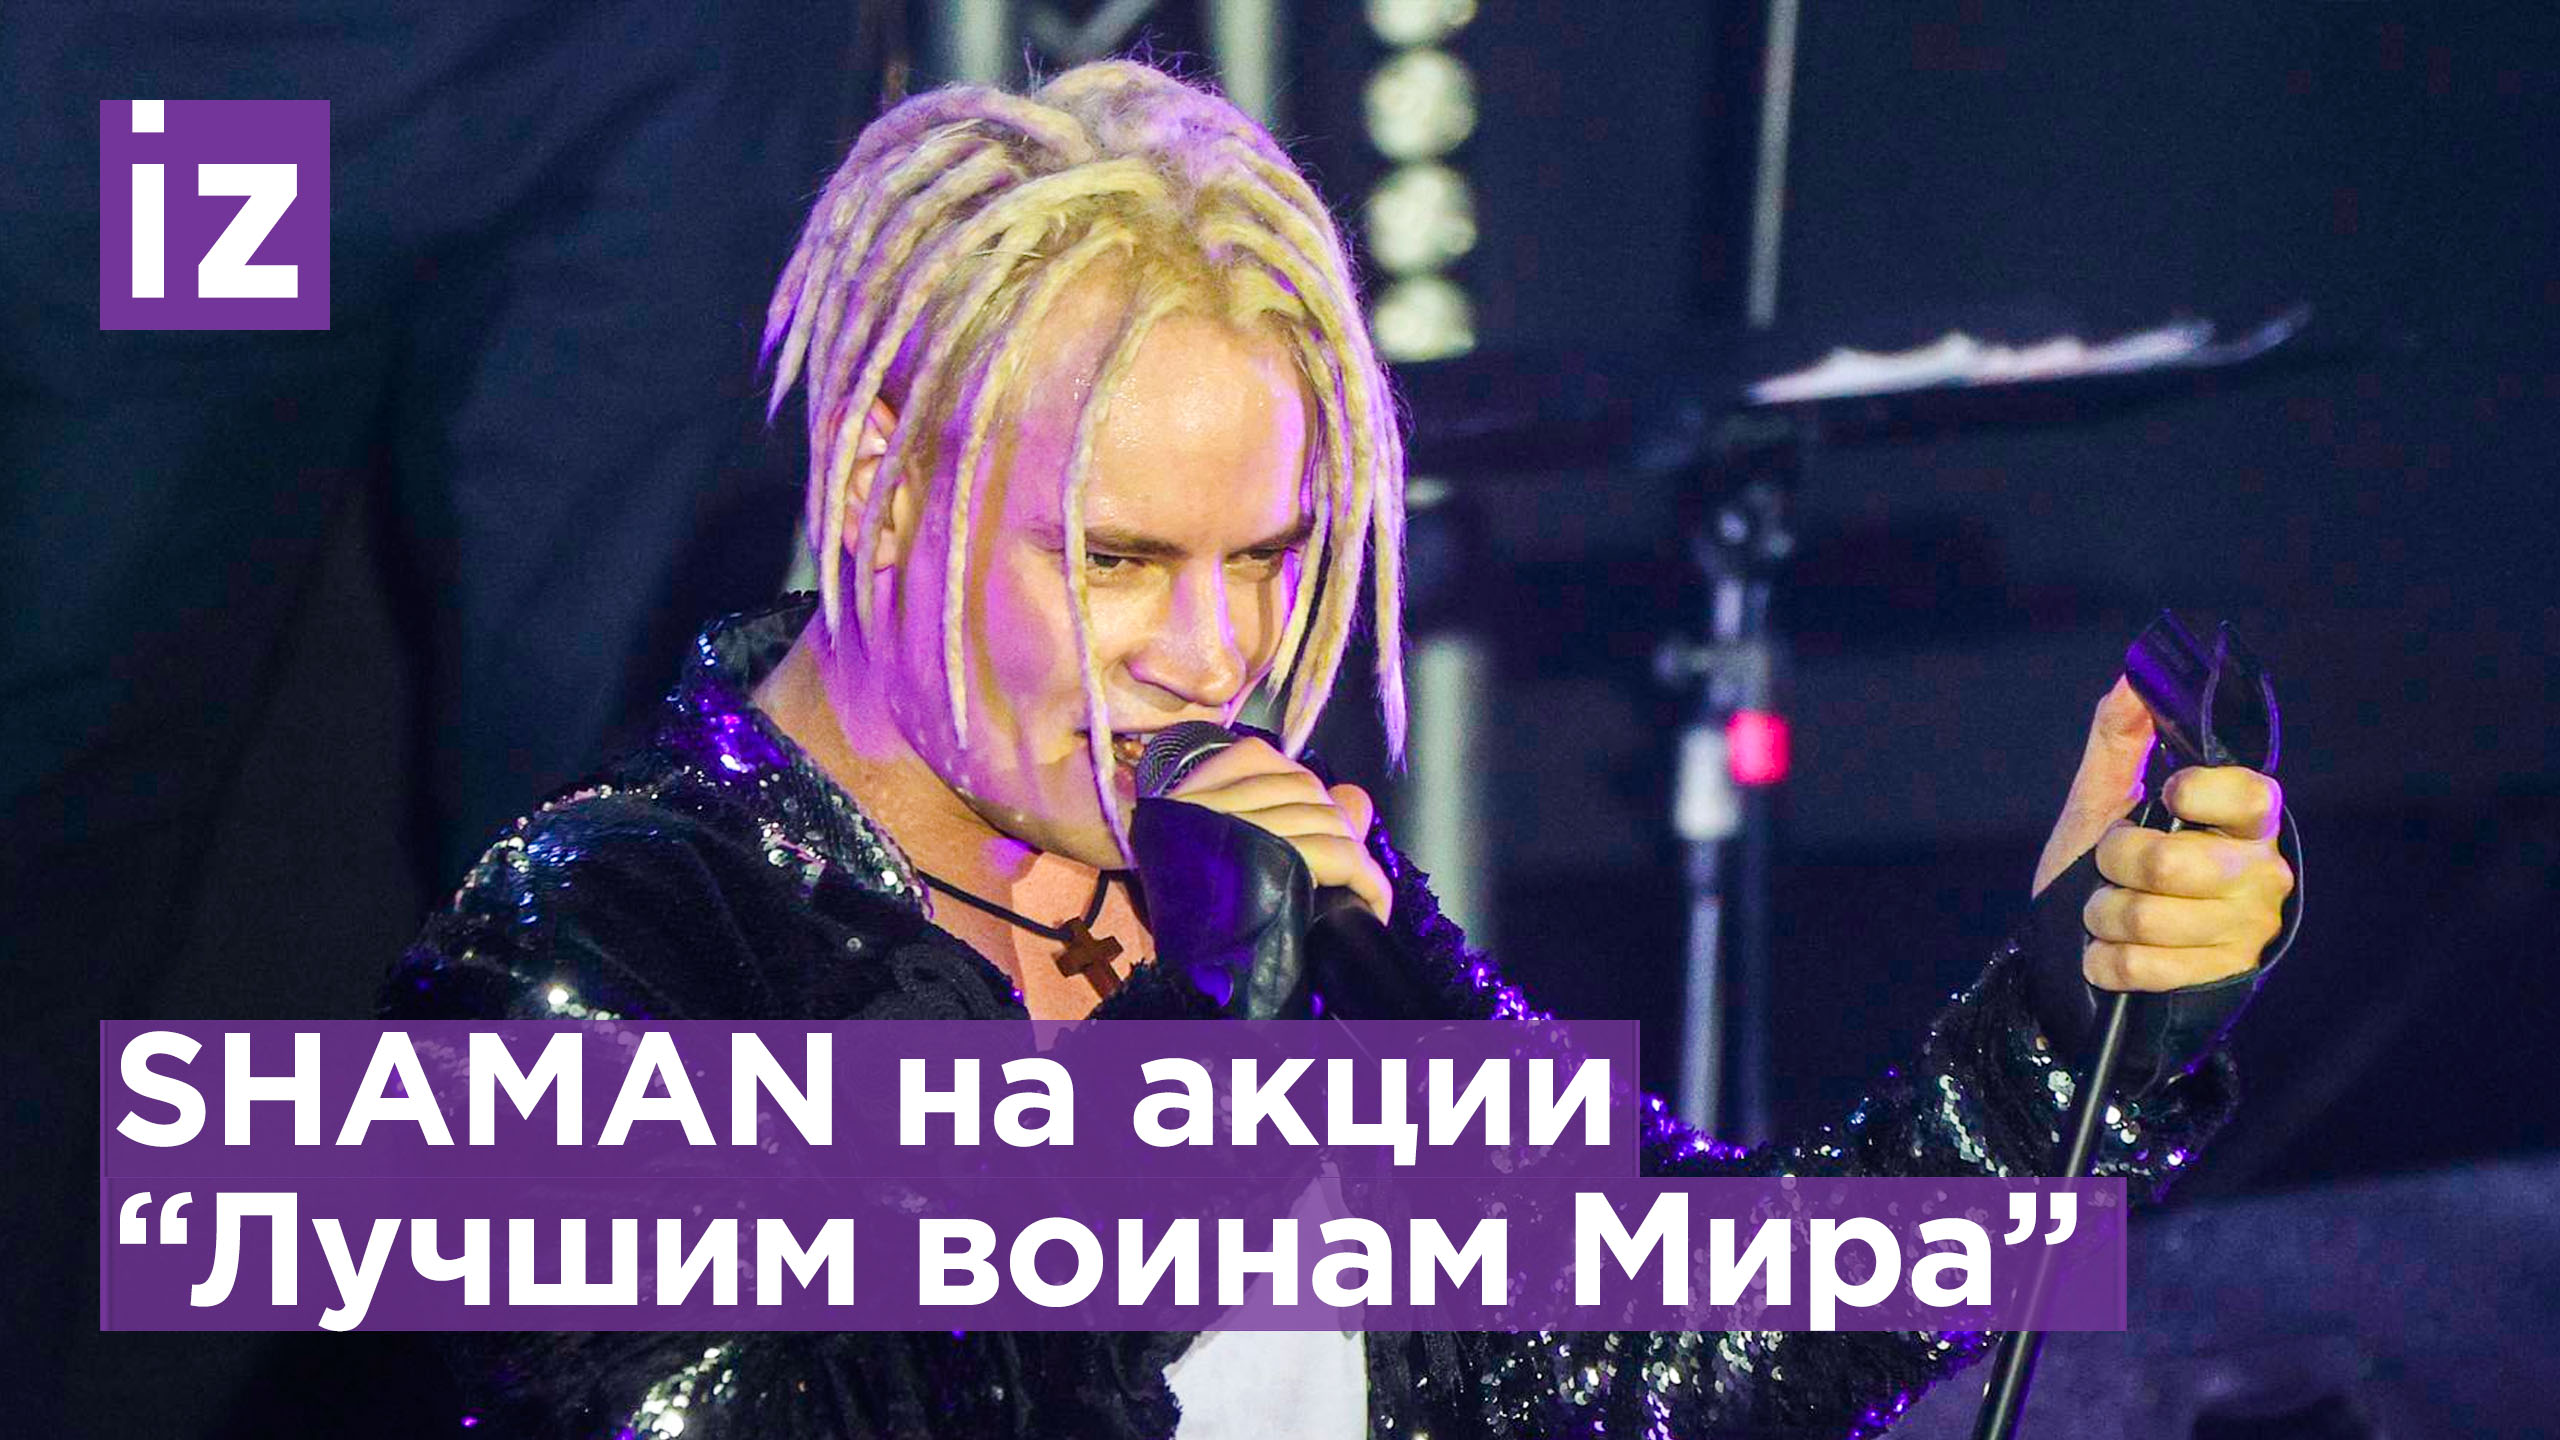 Концерт шамана трансляция. Shaman (певец). Shaman концерт. Российский певец шаман. Шаман выступление.